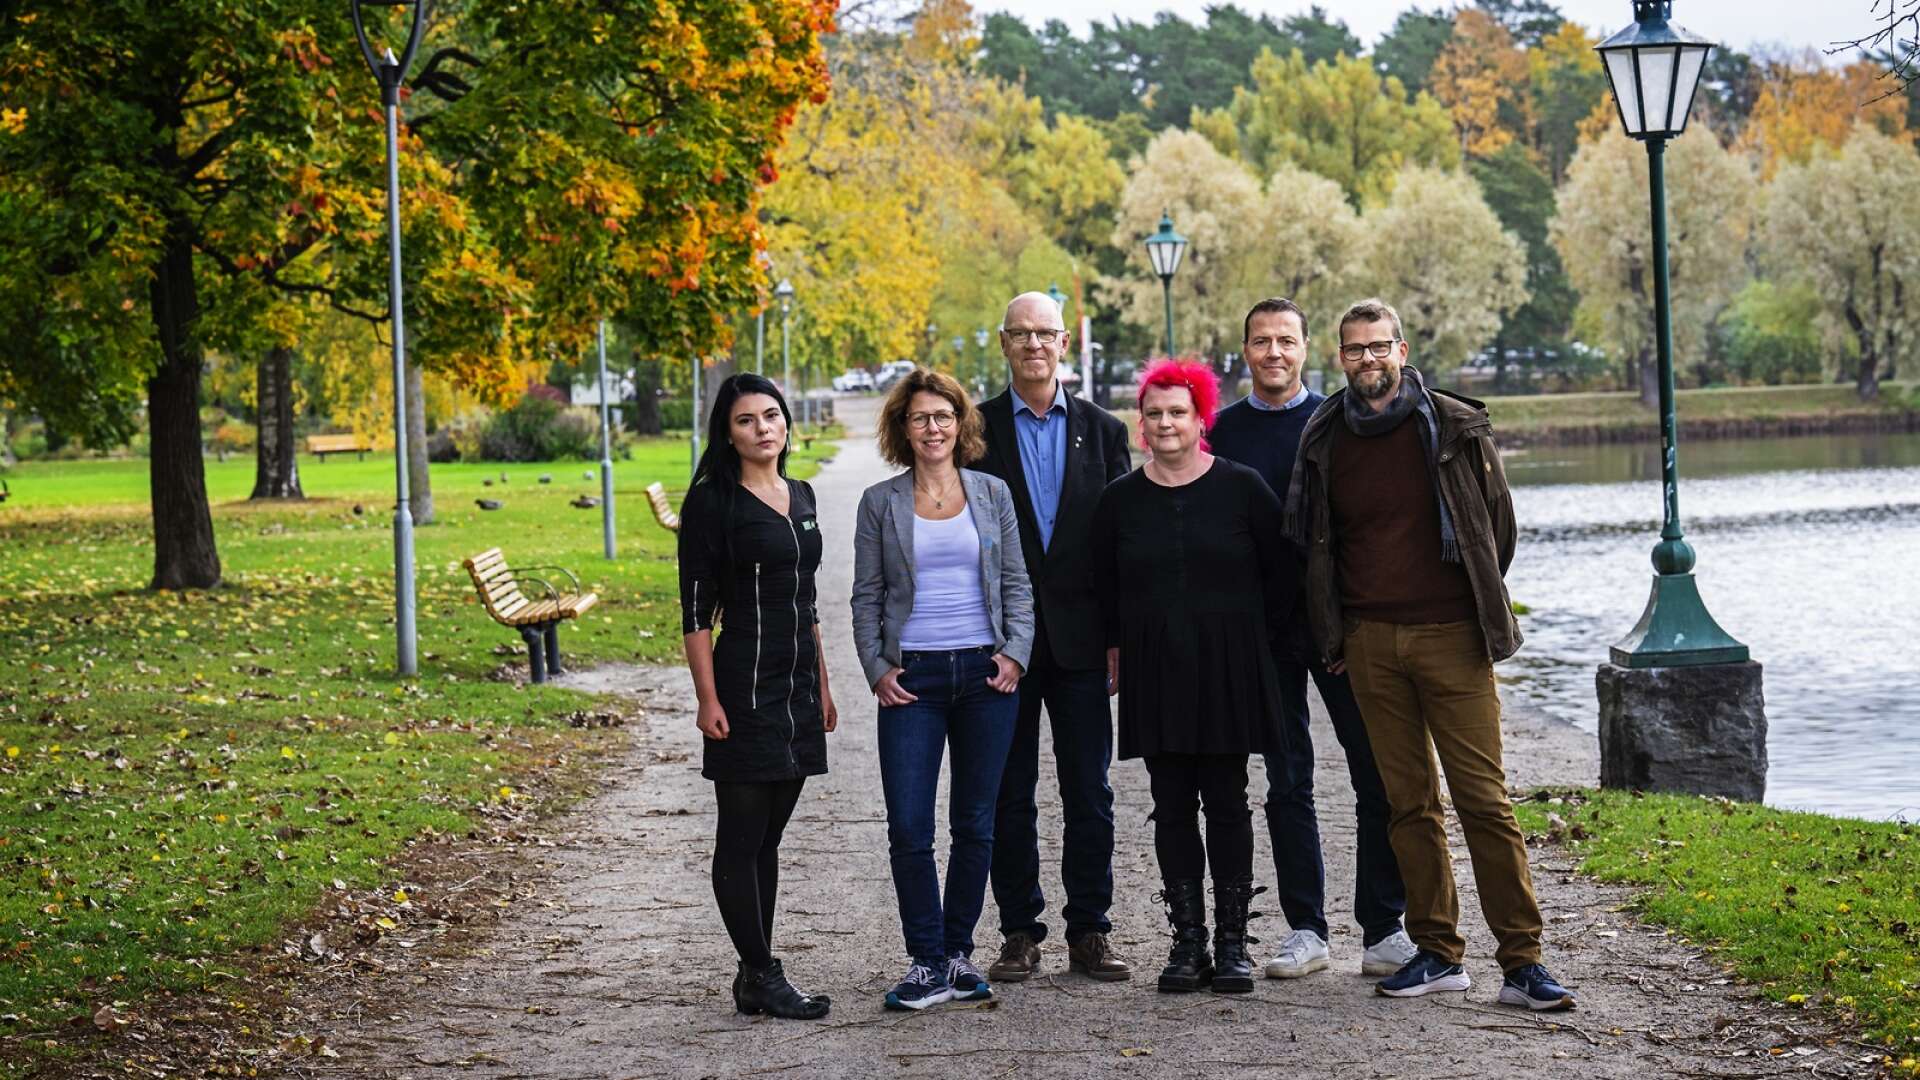 Arvikas nya fyrpartistyre: Alina Koltsova (MP), Mona Smedman (C) och Ulf Jonsson (C), Zara Hedelin (V), Peter Söderström (S) och Kenneth Johannesson (S).